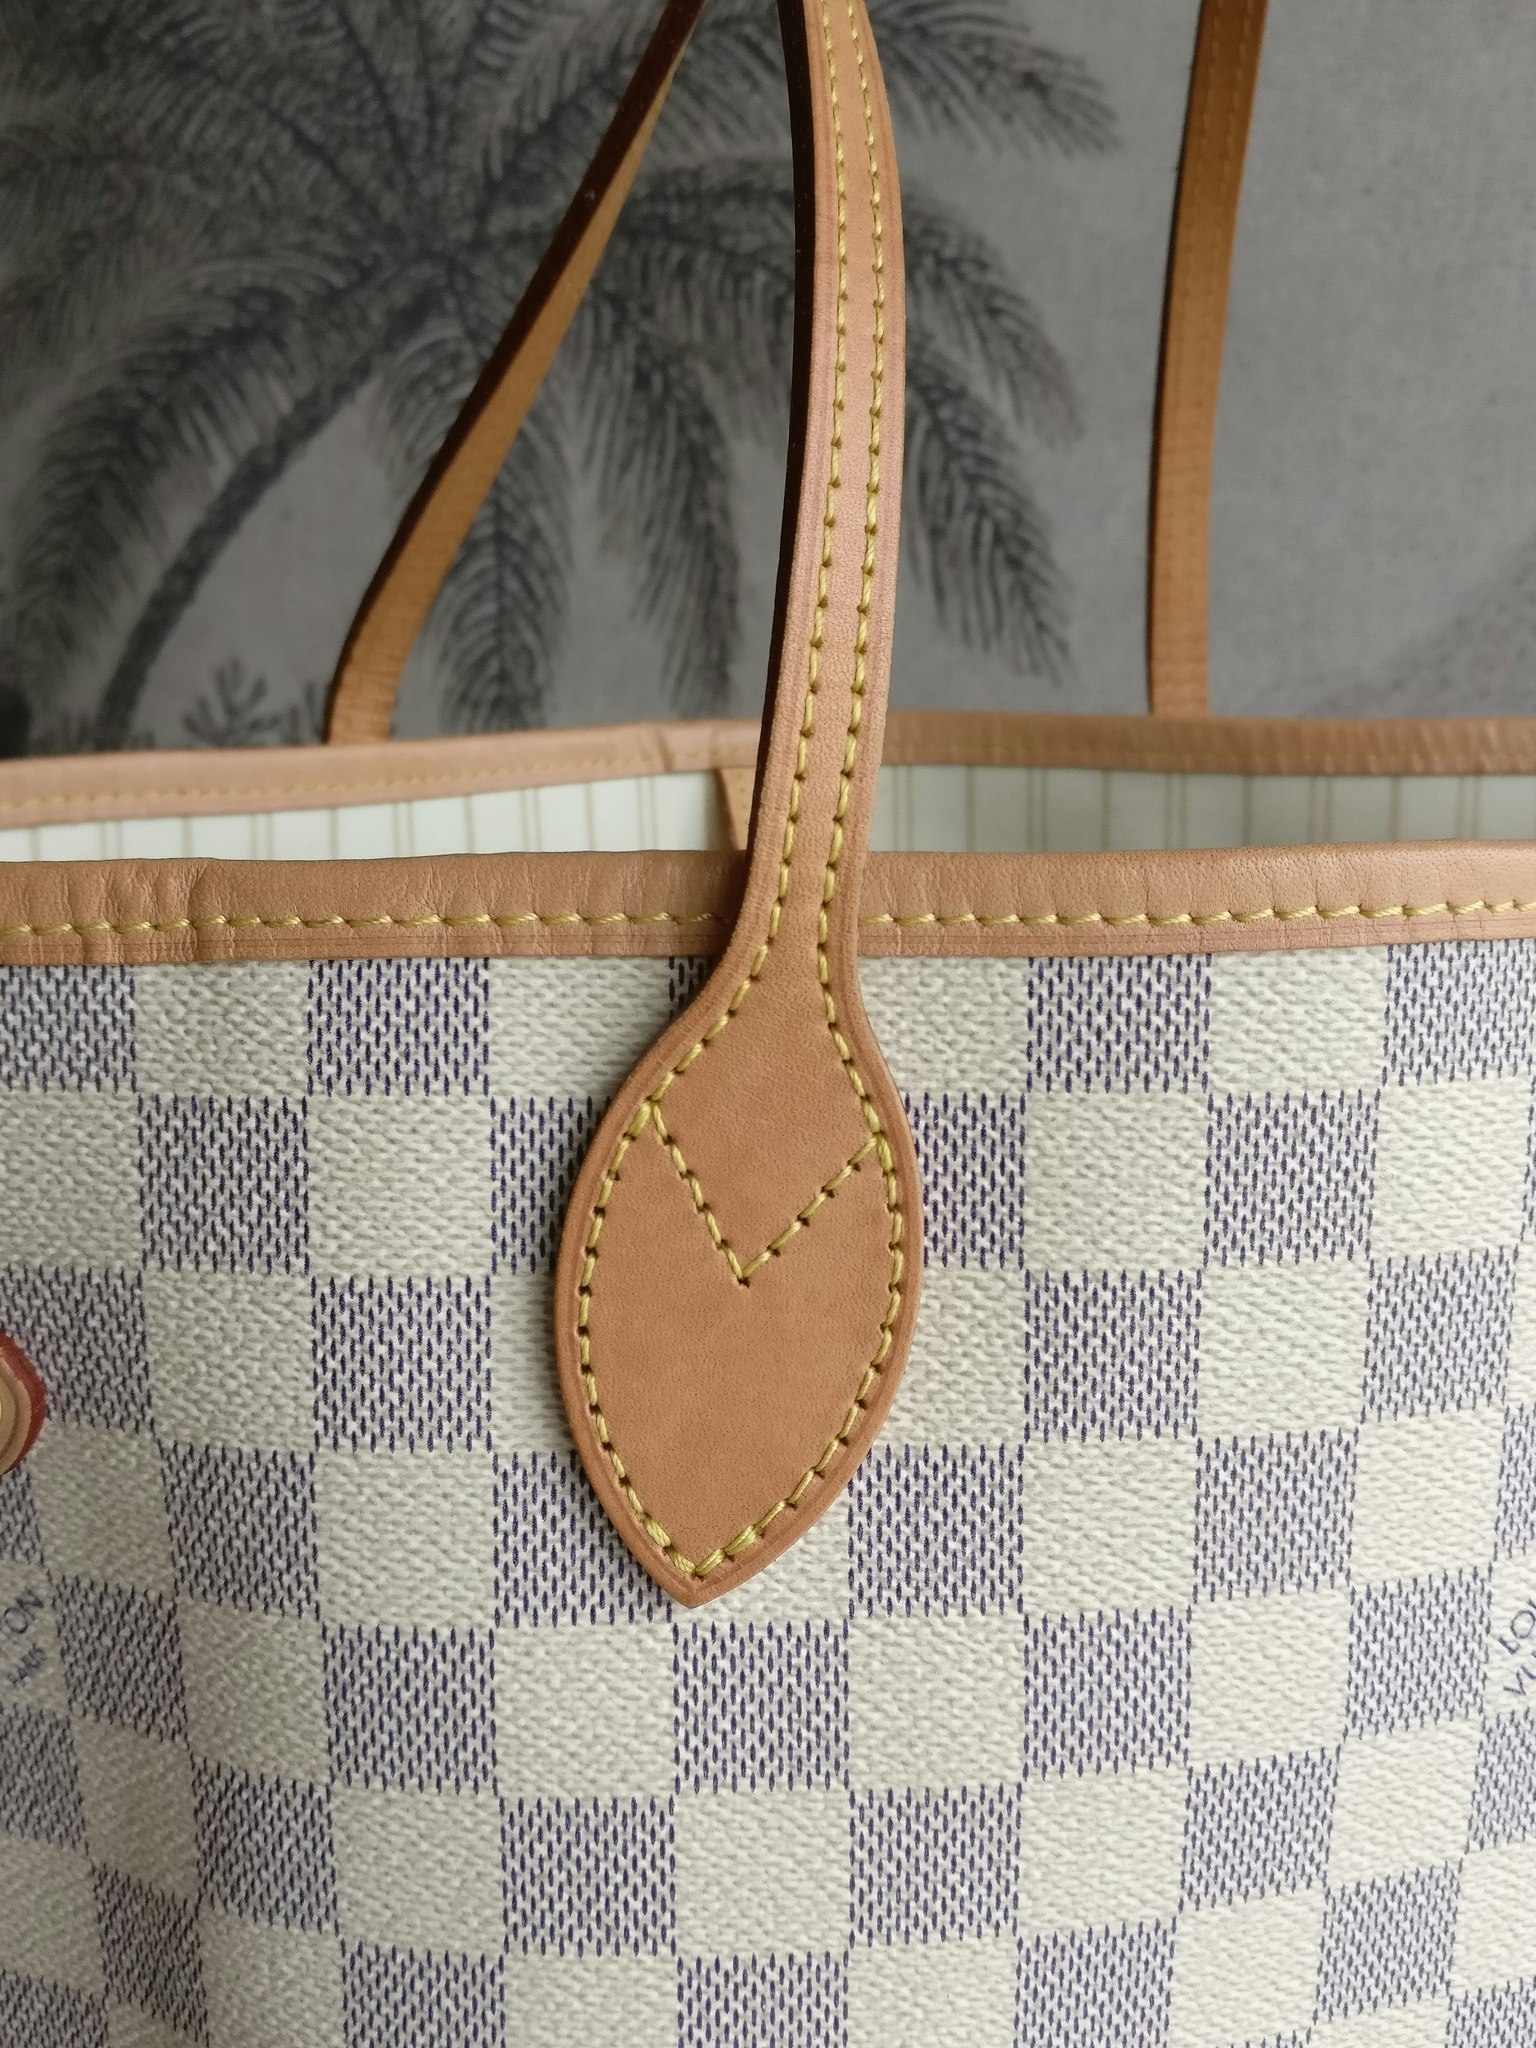 Neverfull MM Damier Azur – Keeks Designer Handbags